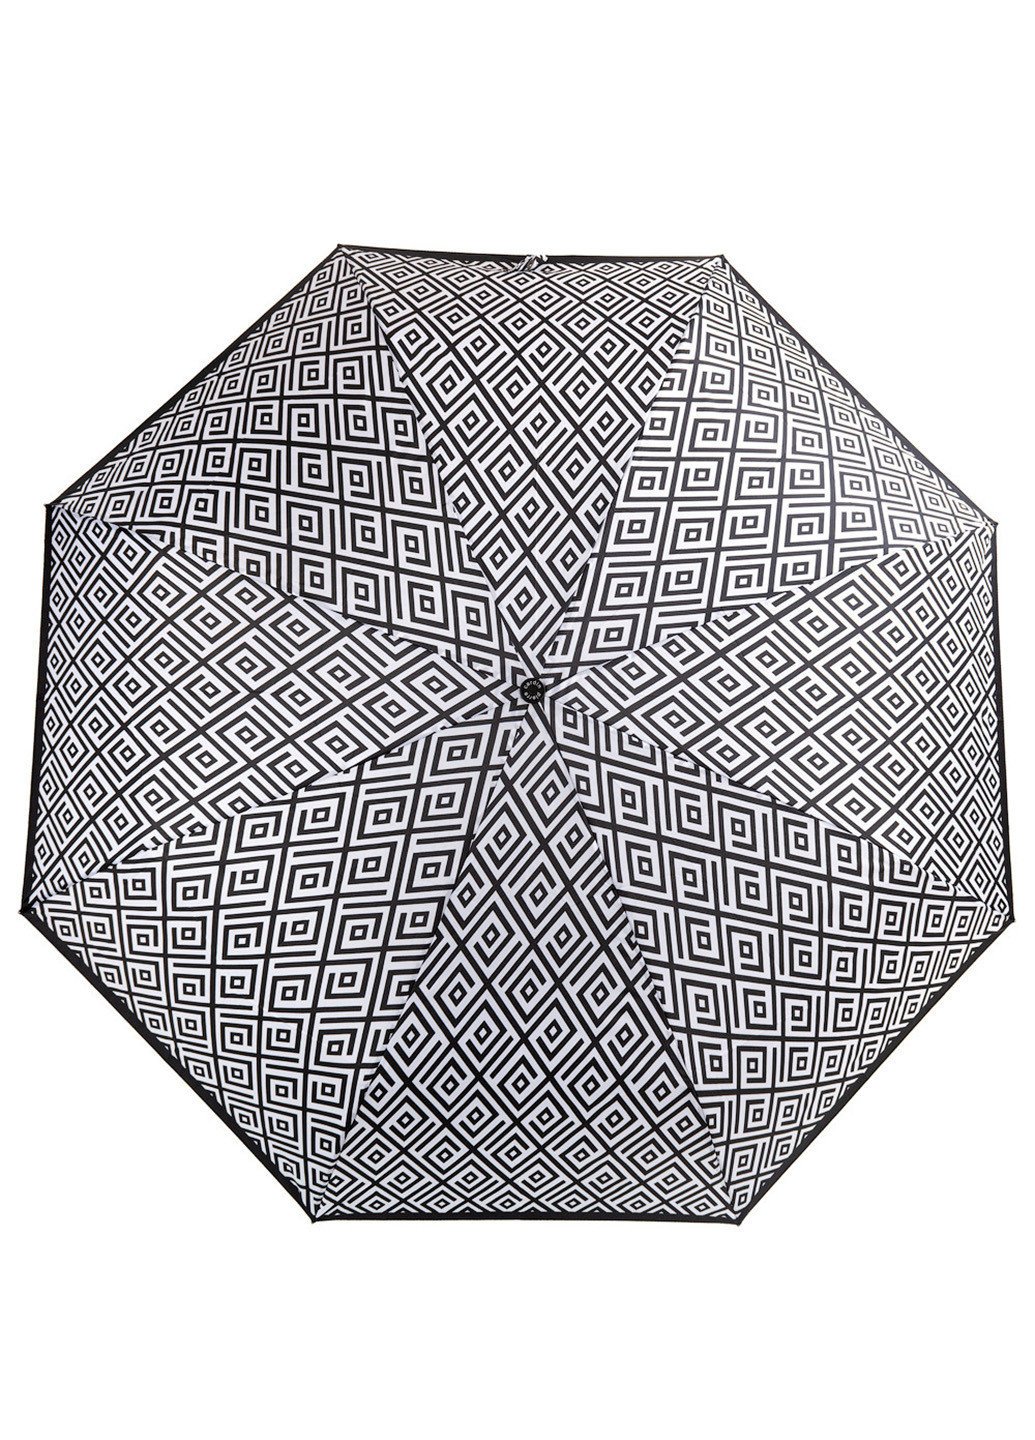 Жіночий складаний парасолька повний автомат 96 см Pierre Cardin (216146041)